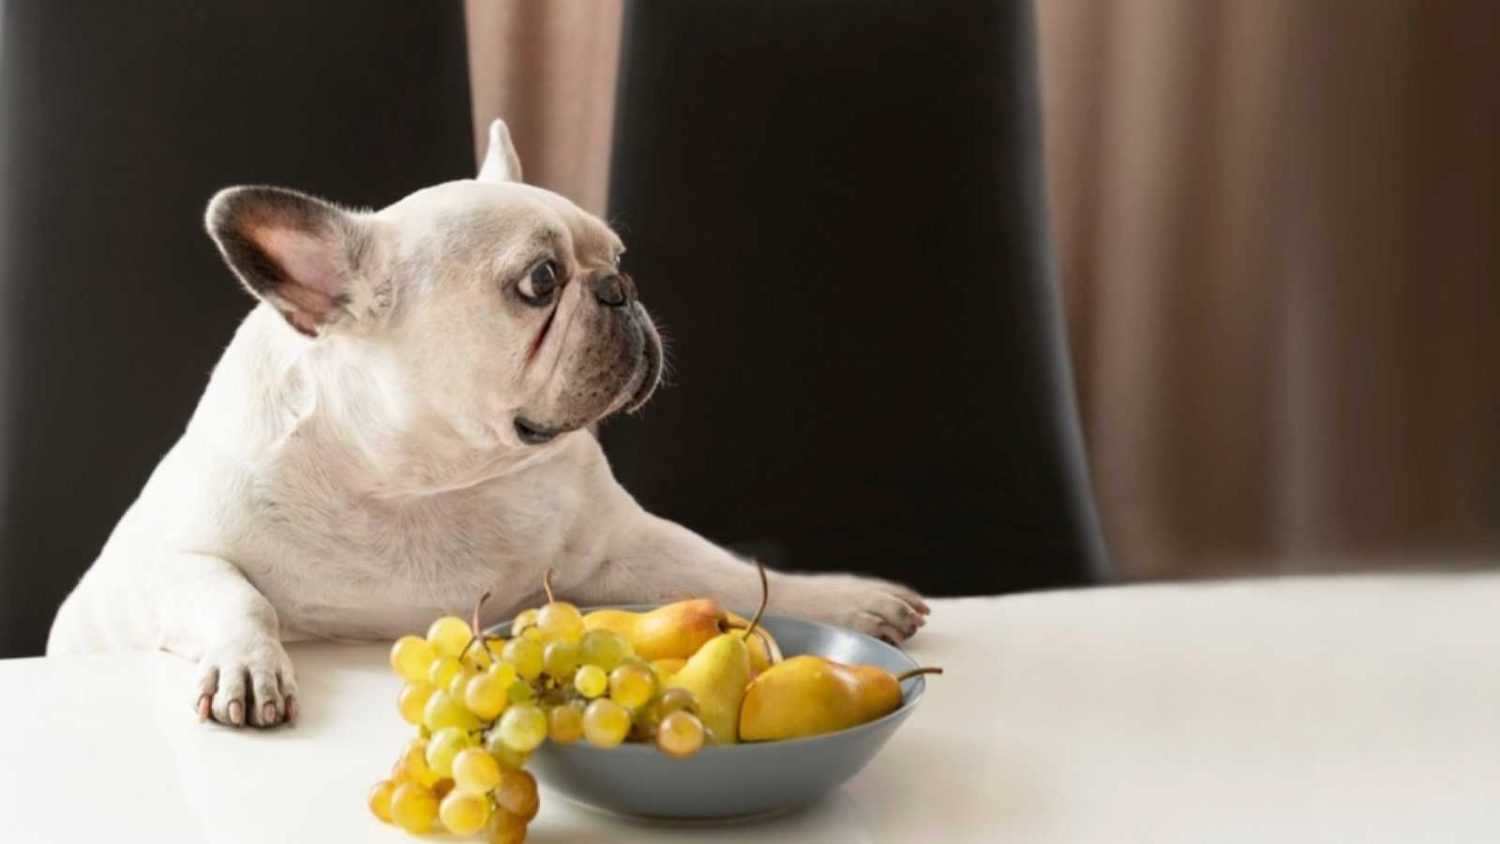 Dog eating grapes